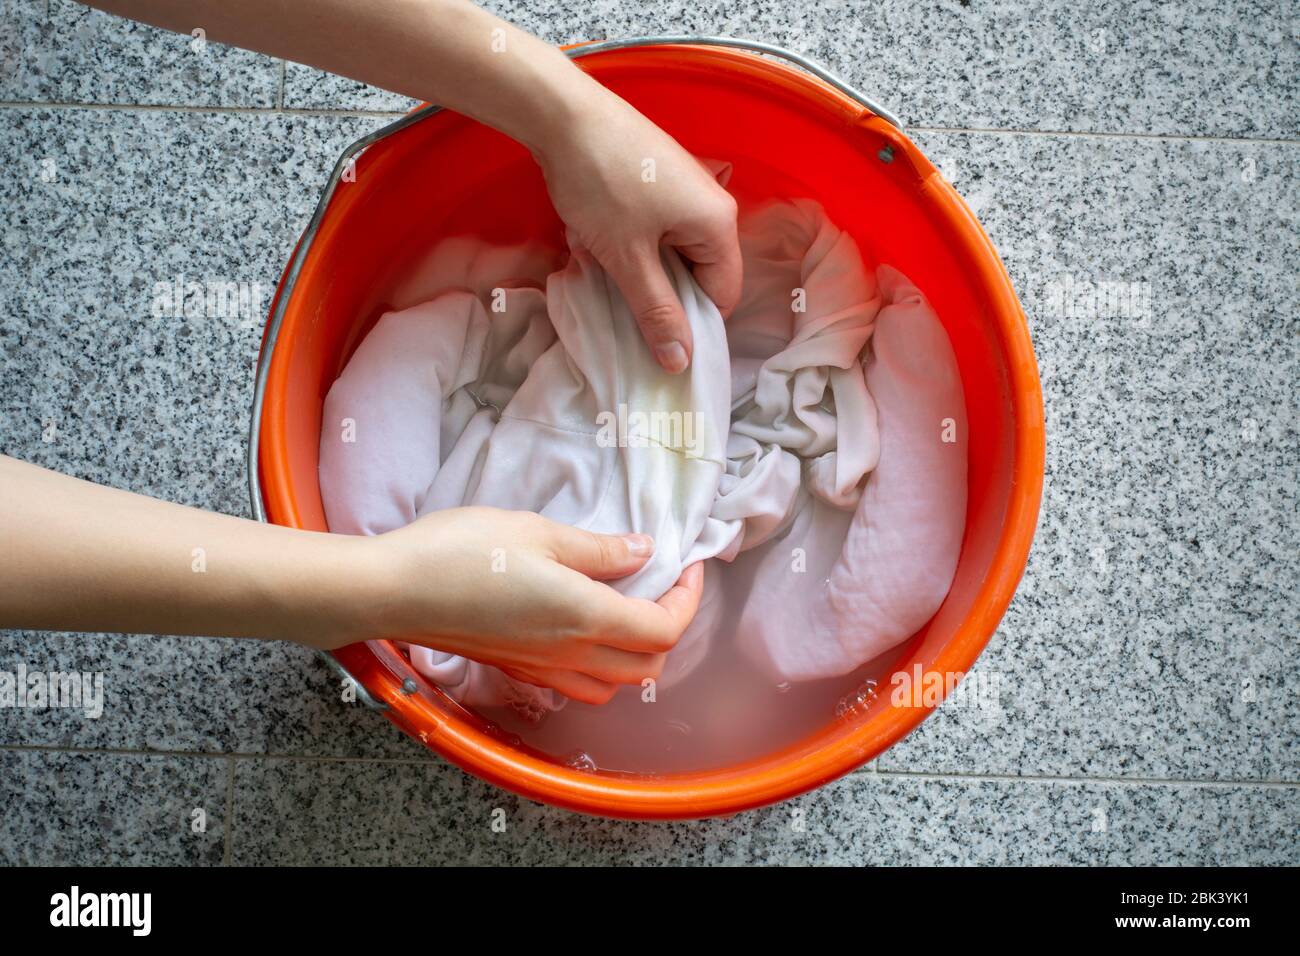 Reinigung der Wäsche manuell. Damenhände waschen schmutzige weiße Hemden mit gelben Schweißflecken, um sie in einem Eimer zu tränken Stockfoto